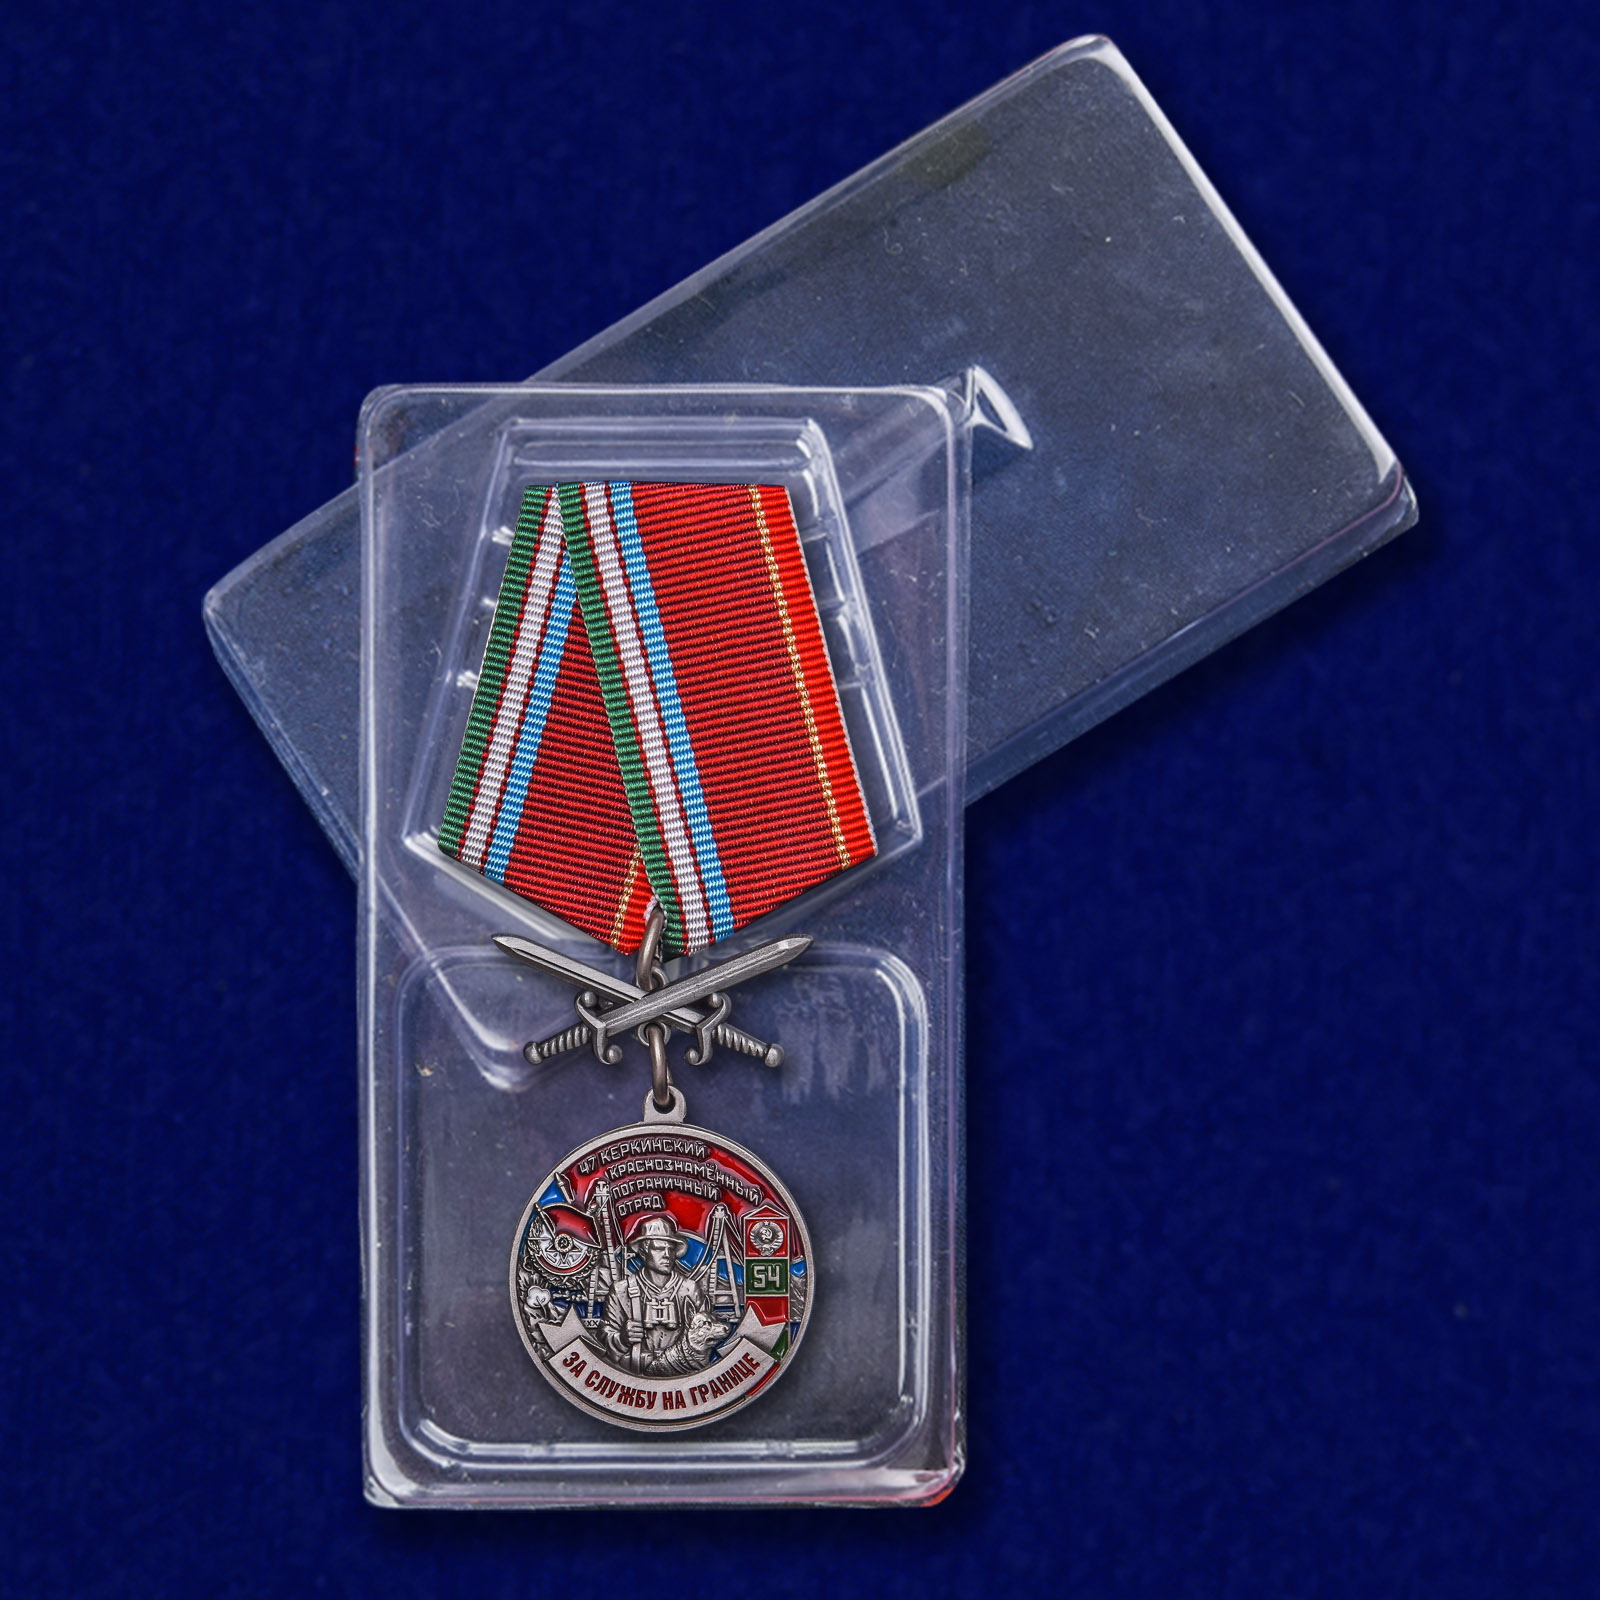 Медаль "За службу в Керкинском пограничном отряде" 